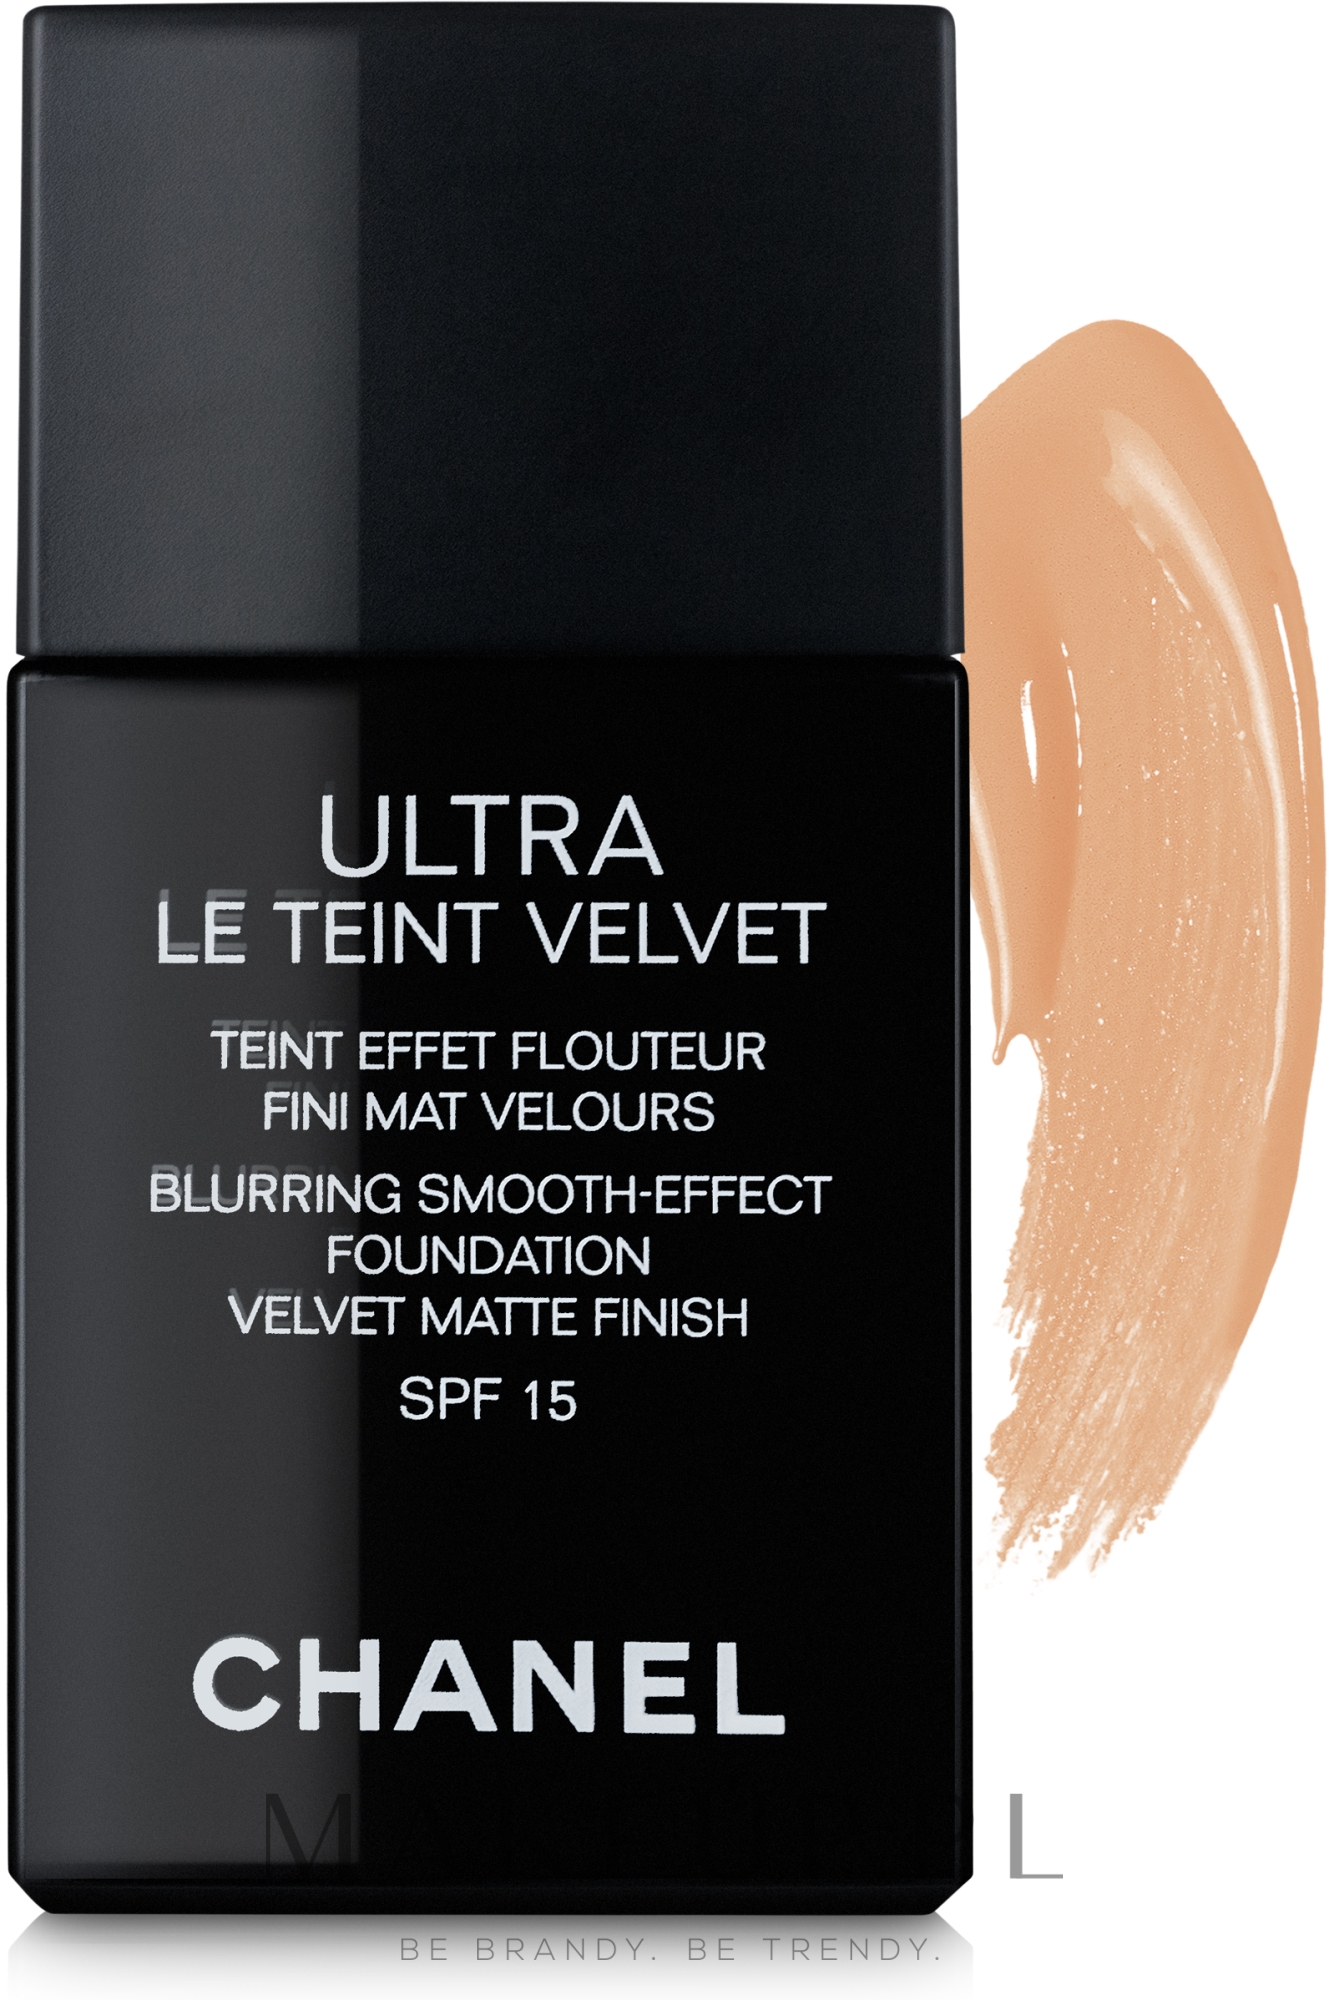 Ultralekki długotrwały podkład matujący do twarzy - Chanel Ultra Le Teint Velvet Blurring Smooth-Effect Foundation SPF 15 — Zdjęcie 40 - Beige